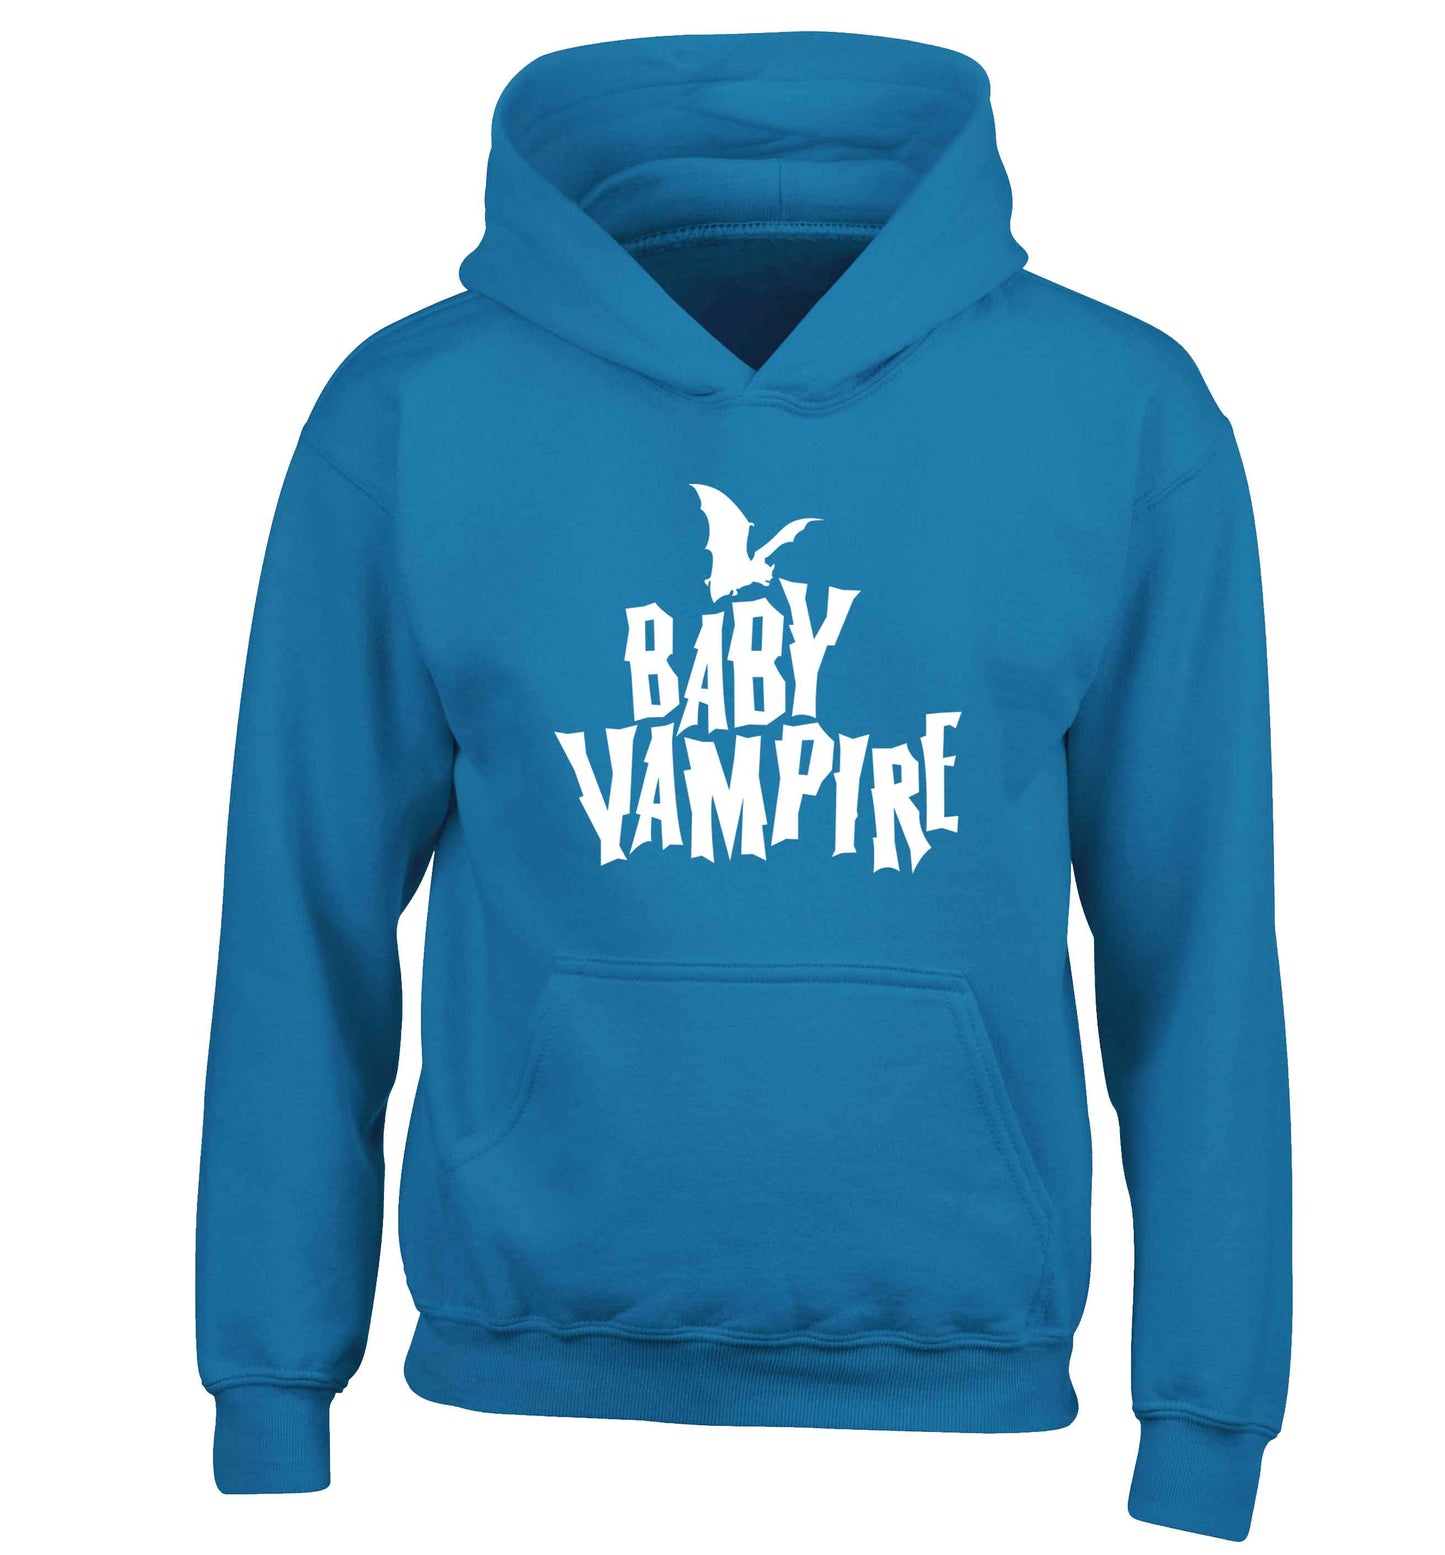 Baby vampire children's blue hoodie 12-13 Years